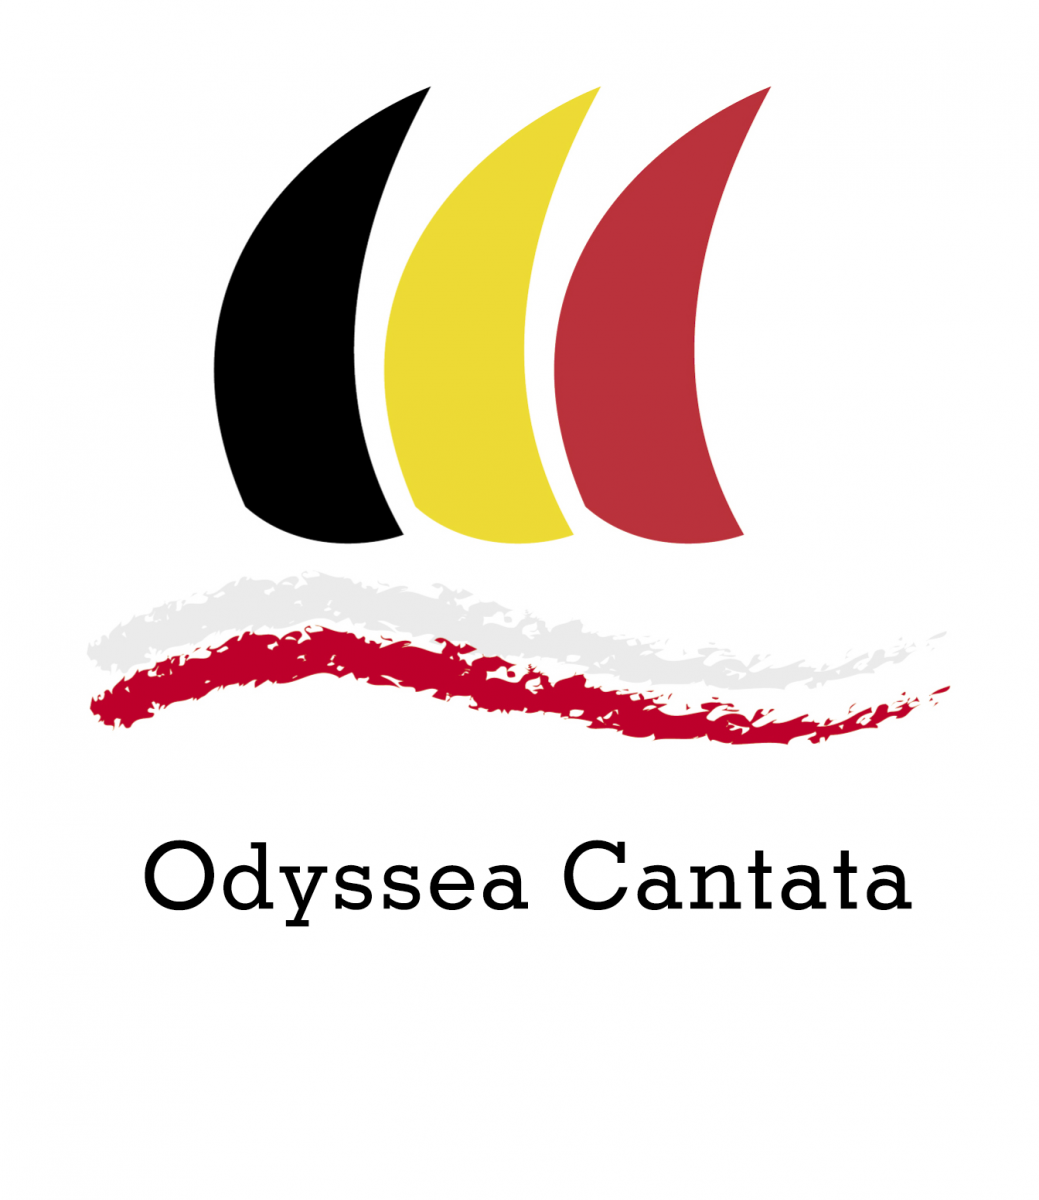 BELGIAN DAYS 2019: Belgian Concert "Odyssea Cantata"